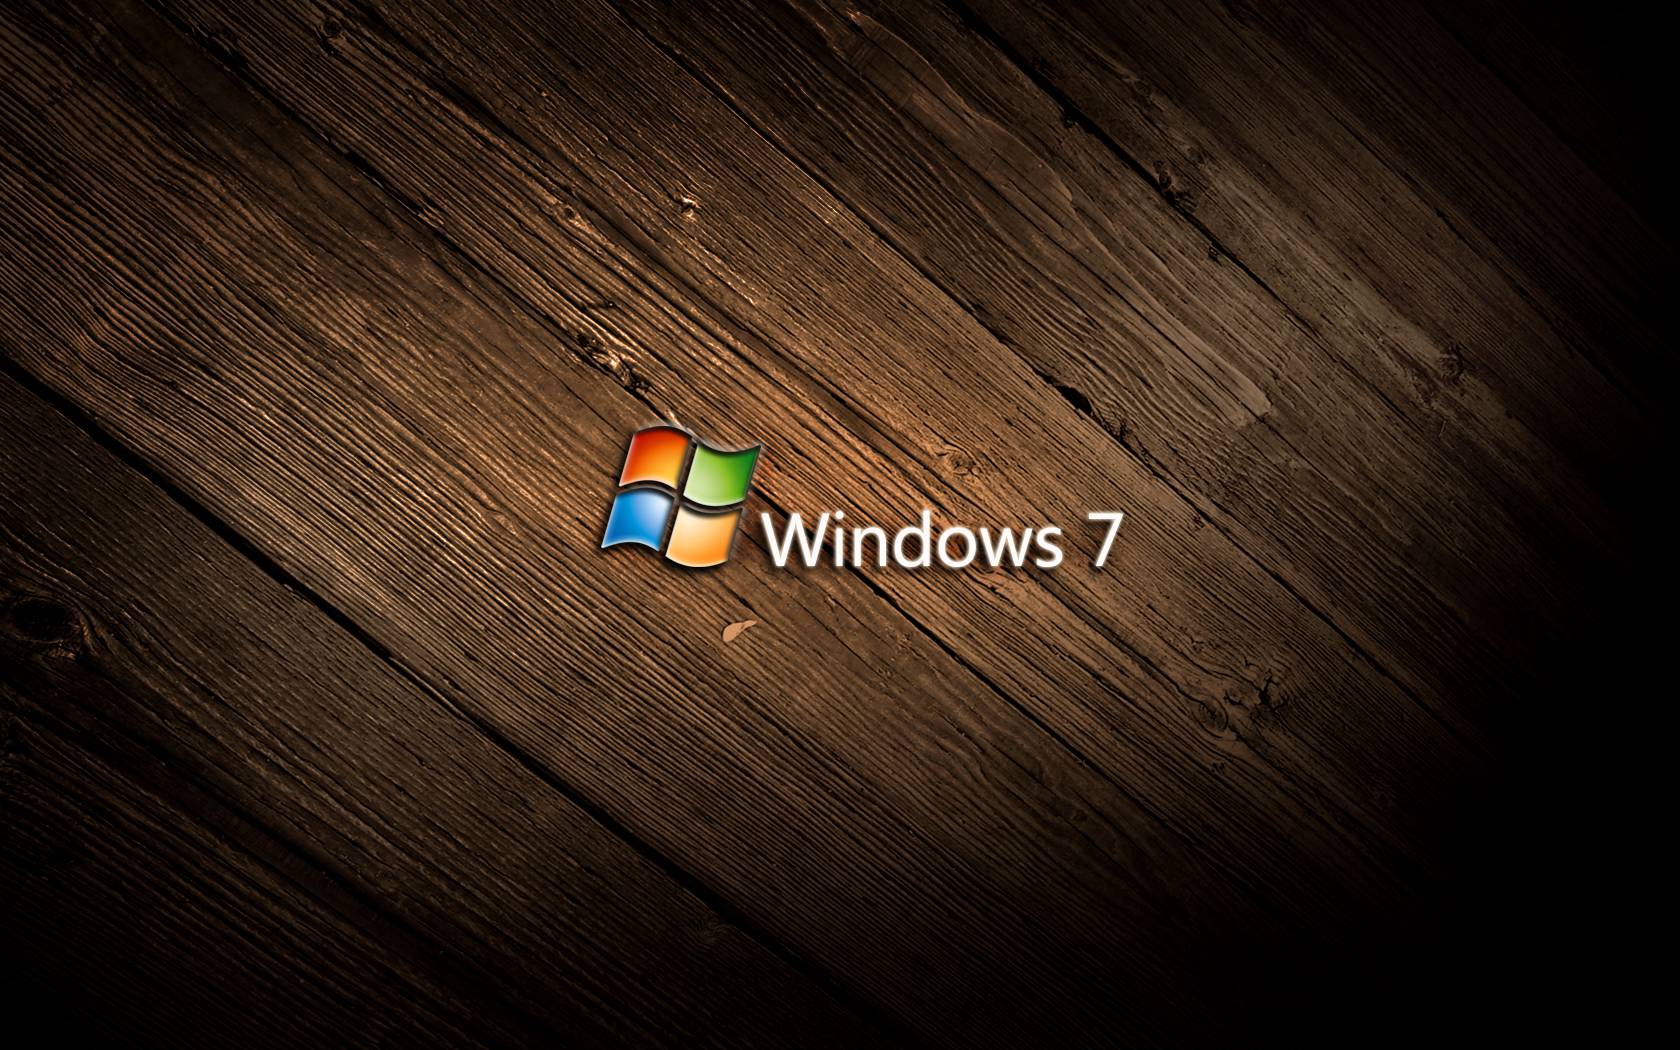 Hãy lướt qua mạng và tải về những bức hình mà bạn thấy thích nhất. Có rất nhiều trang web chia sẻ hình nền Windows 7 miễn phí và chúng cũng rất đa dạng về chủ đề. Bạn chỉ cần chọn lựa và tải về là có thể trang trí cho máy tính mình thêm phần sinh động và ấn tượng hơn.